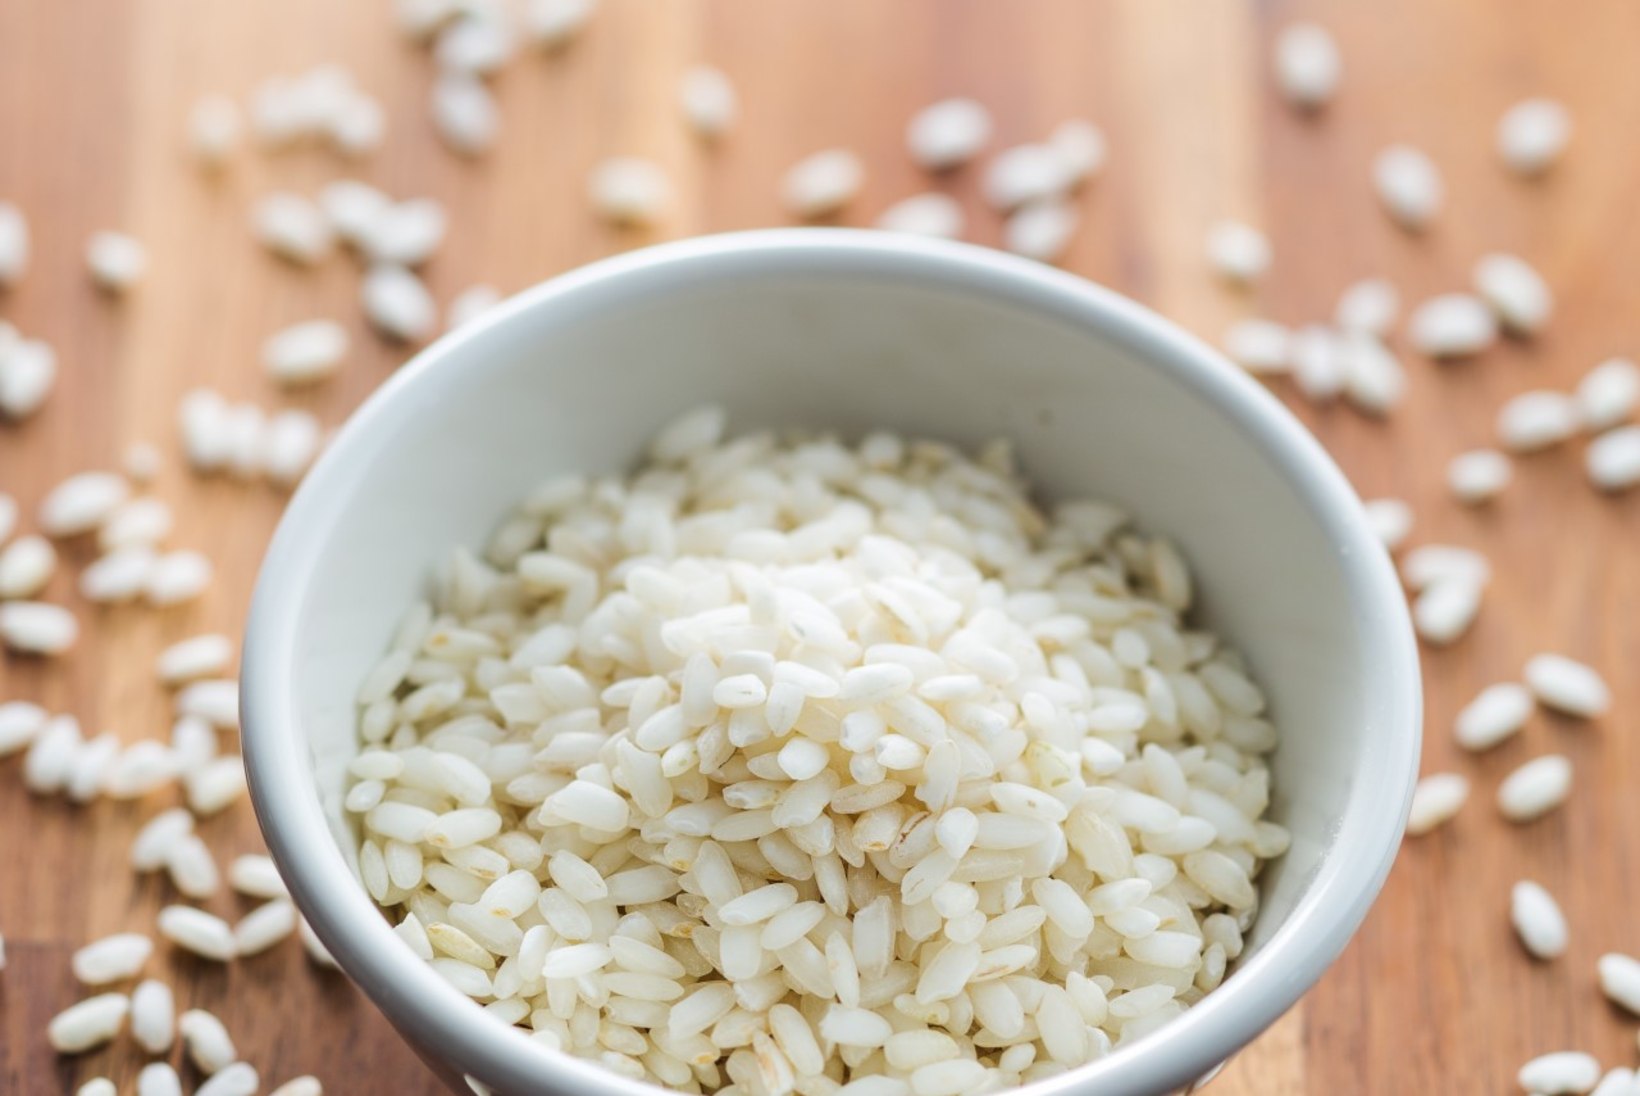 Kuidas süüa valget riisi nii, et see tervist ei kahjustaks?